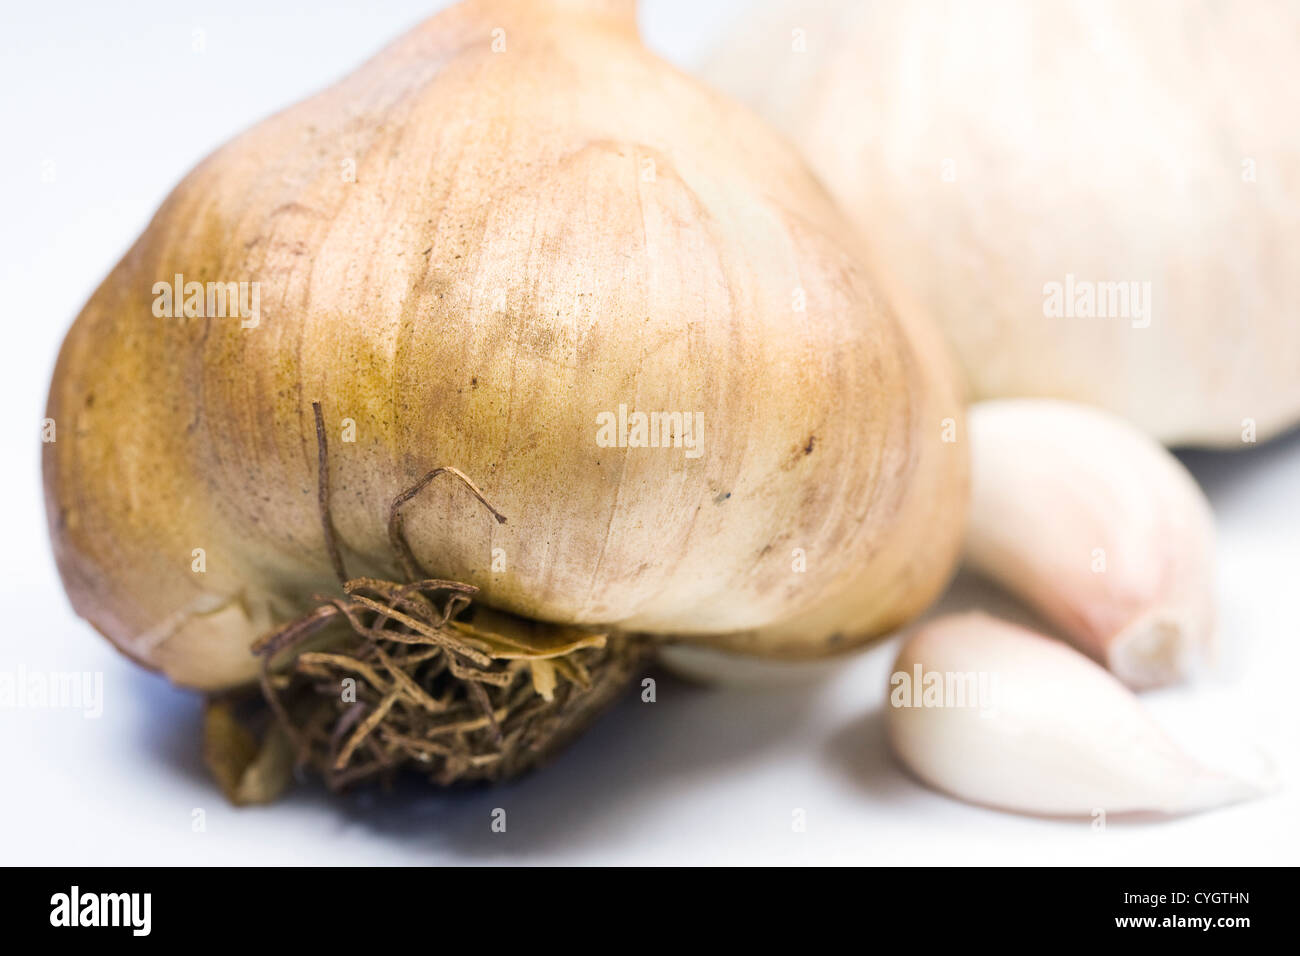 Allium Sativum. Geräucherte Knoblauchzwiebel vor einem weißen Hintergrund. Stockfoto